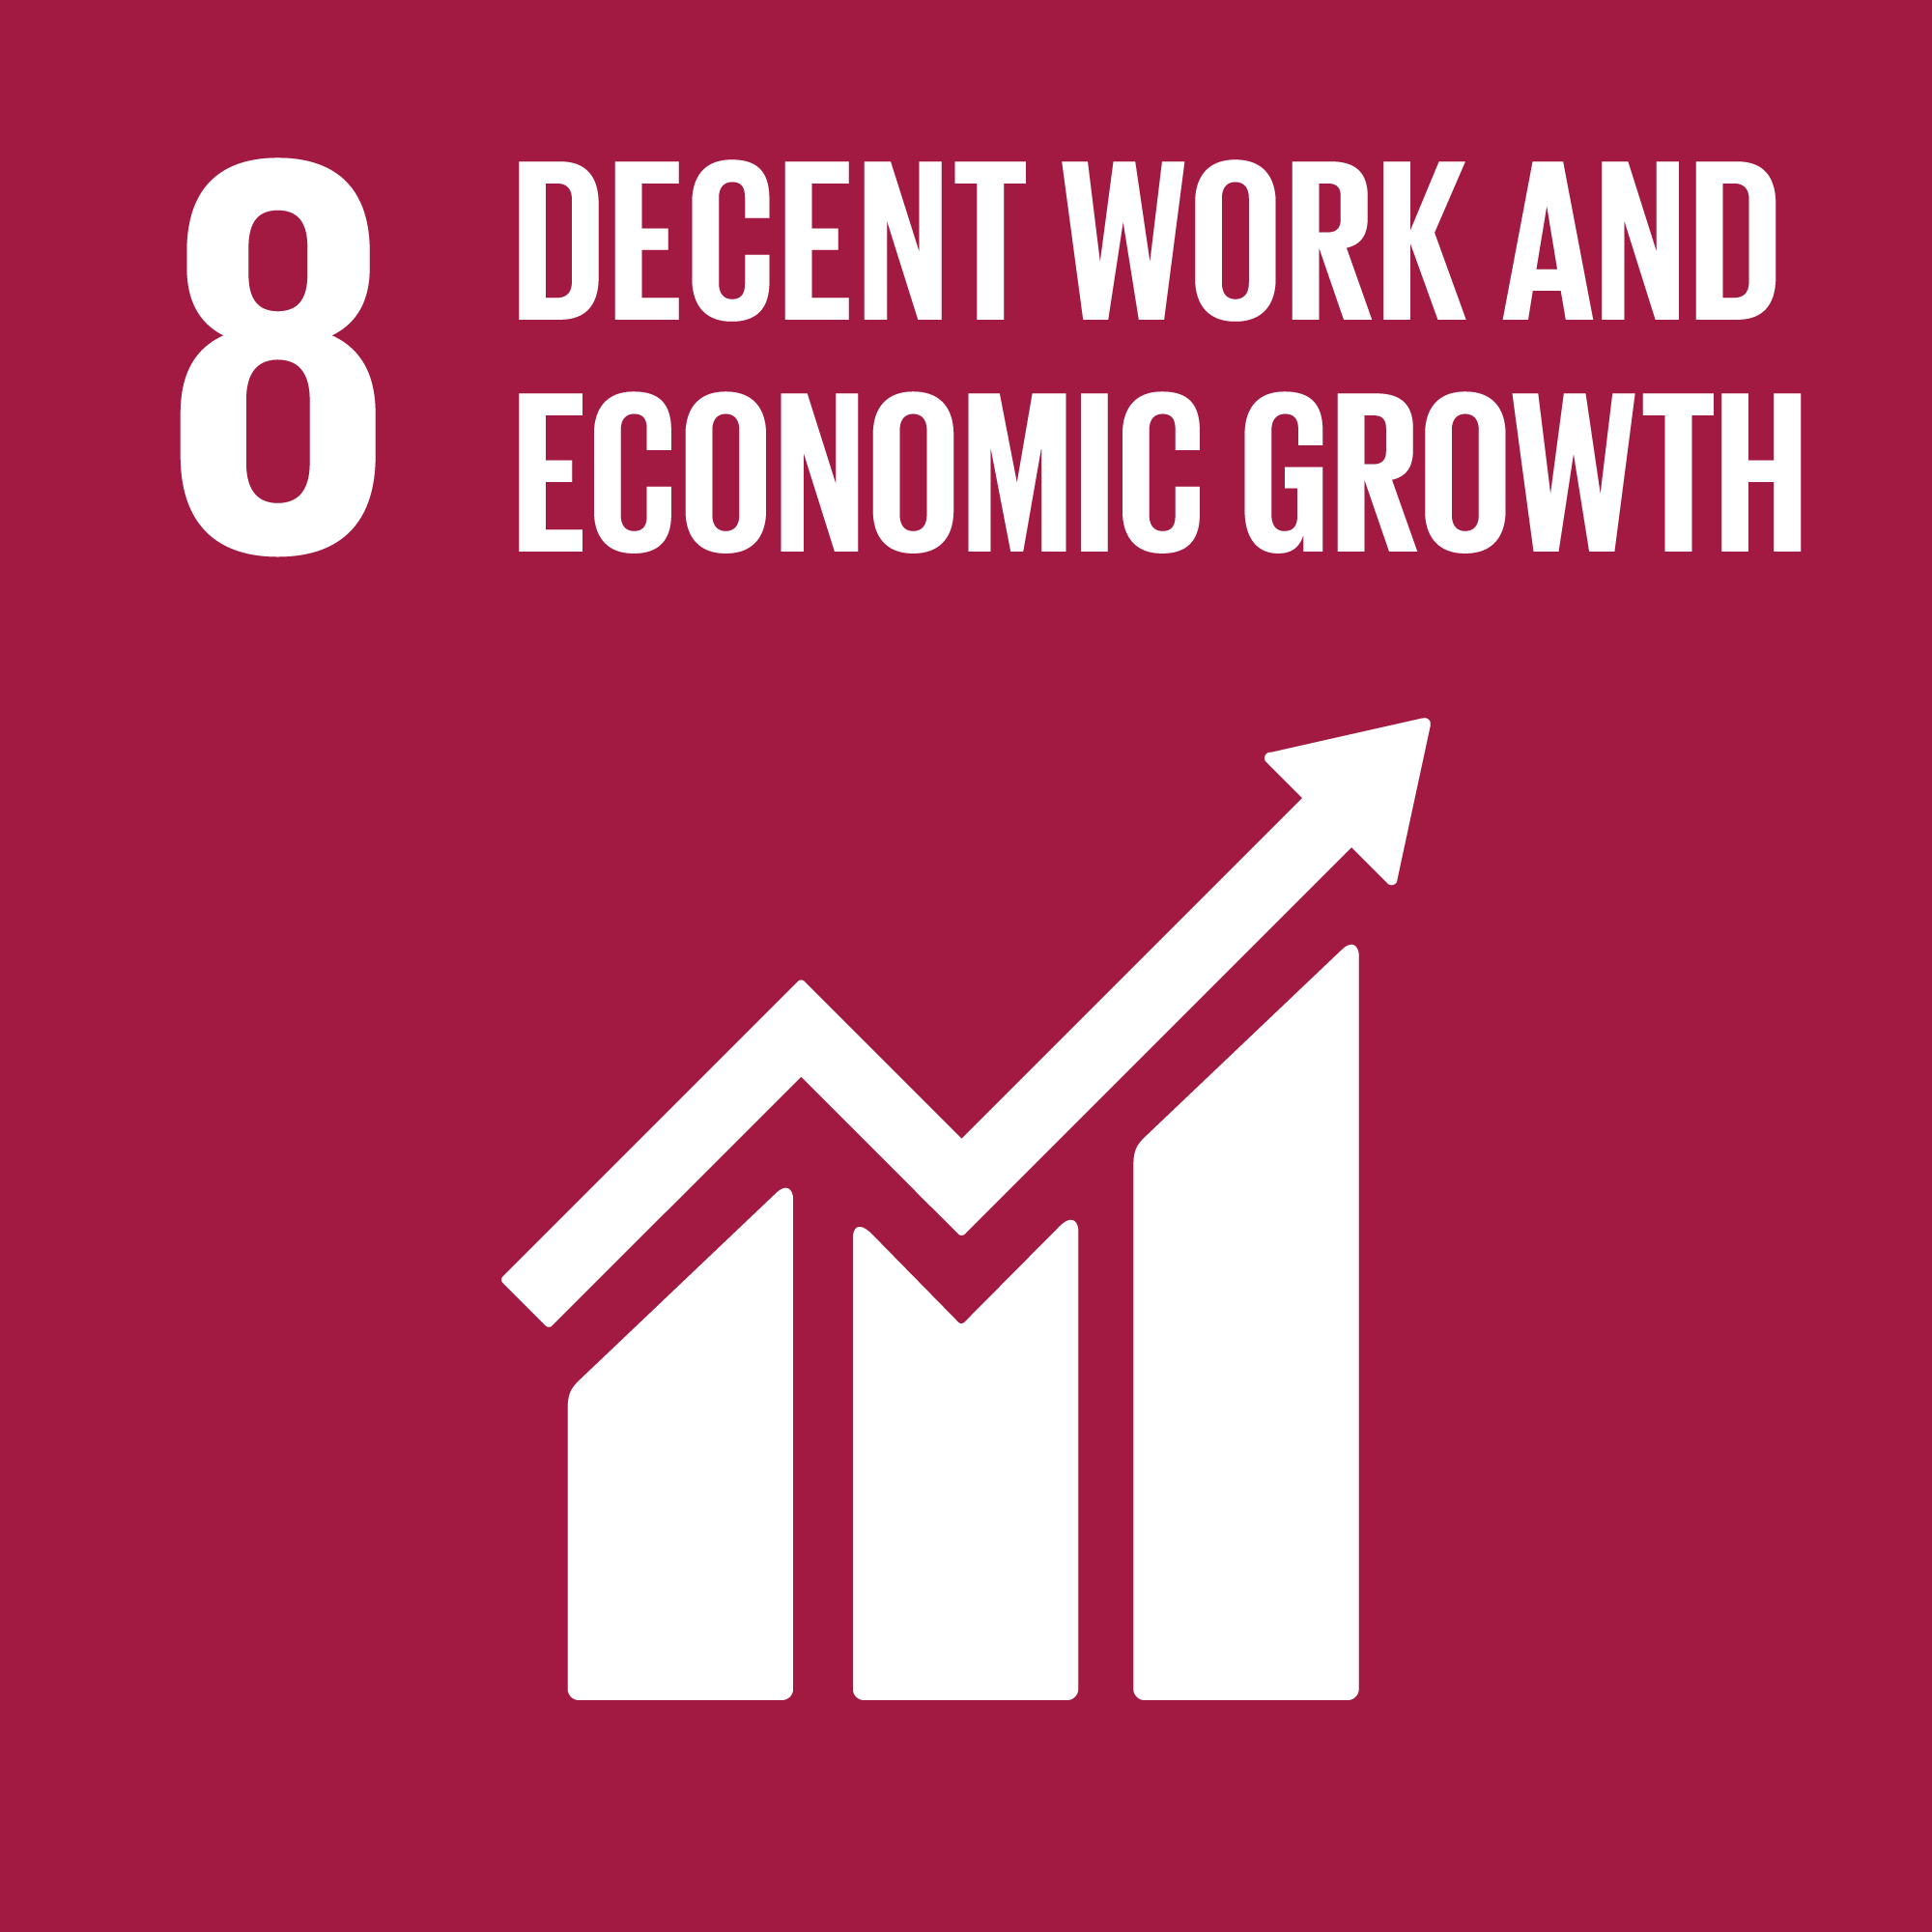 #8 Menschenwürdige Arbeit und Wirtschaftswachstum